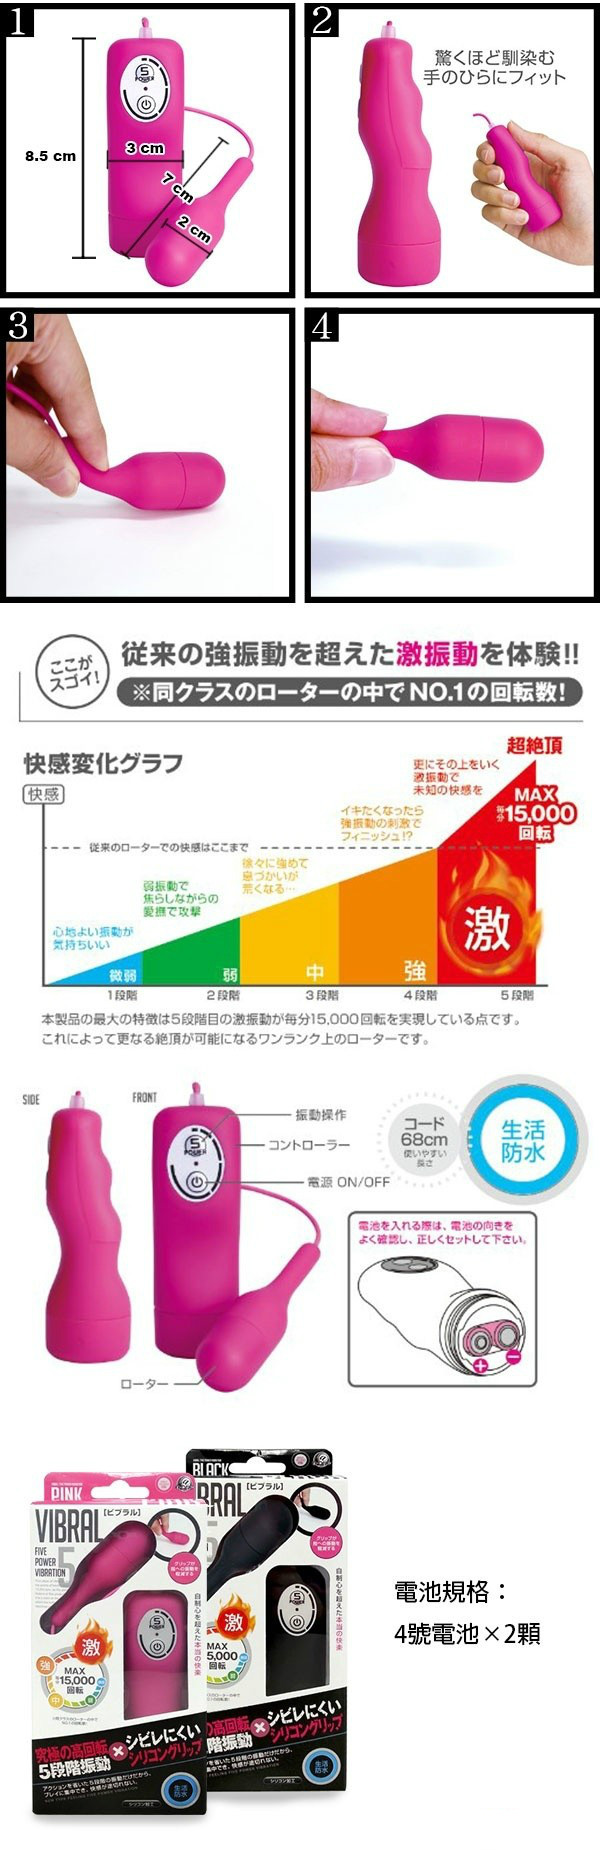 日本 A-ONE 迷你震动跳蛋产品图2